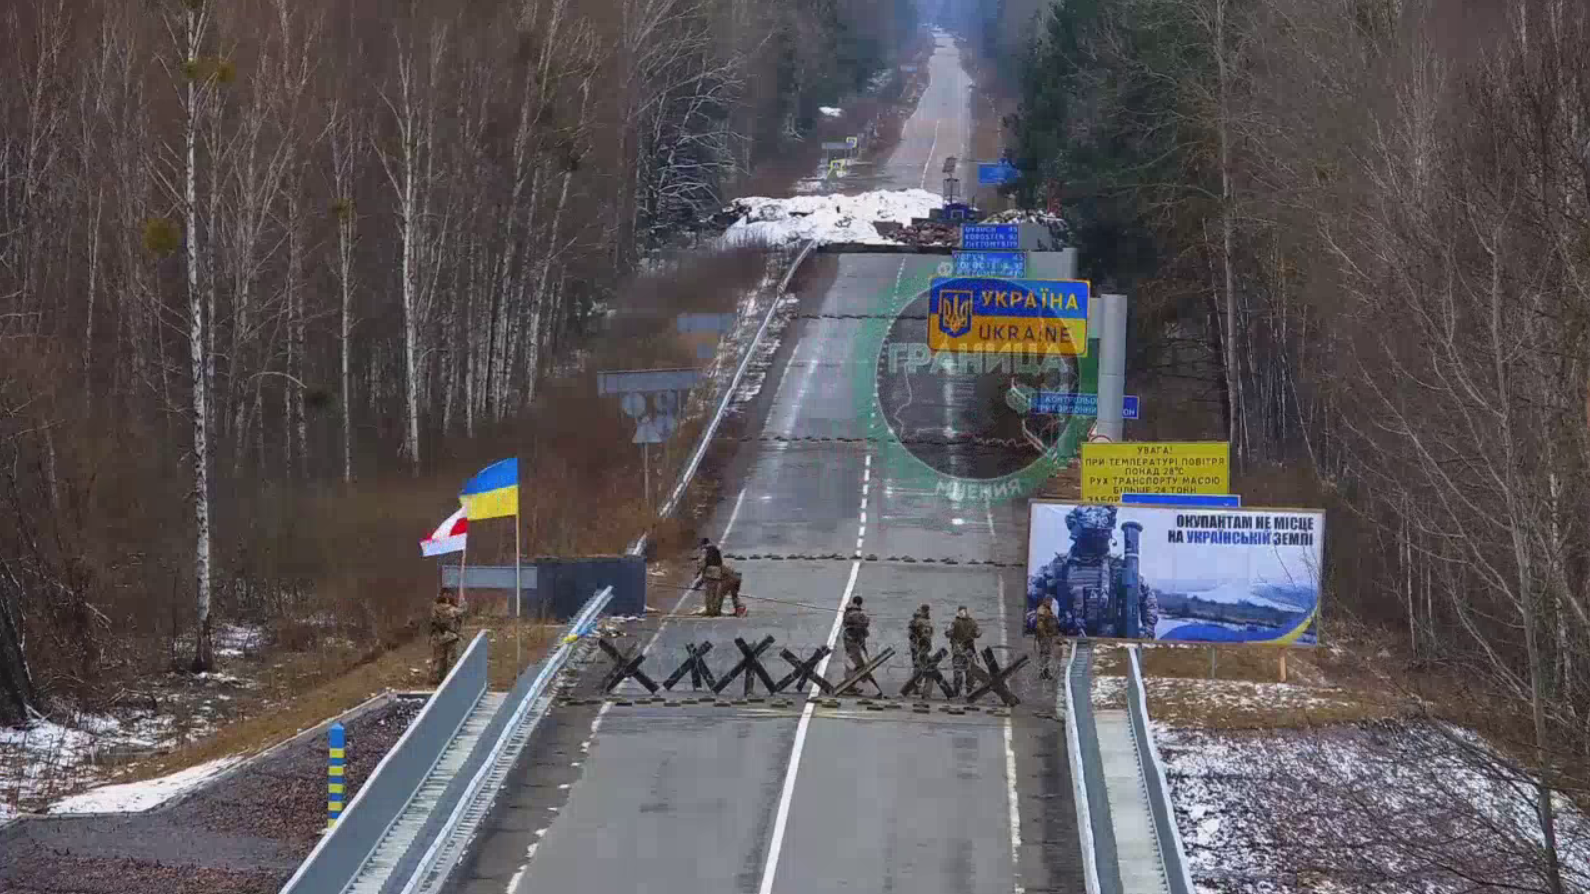 Не только ''Валера'': украинские пограничники устроили троллинг высшего уровня беларуским коллегам. Видео